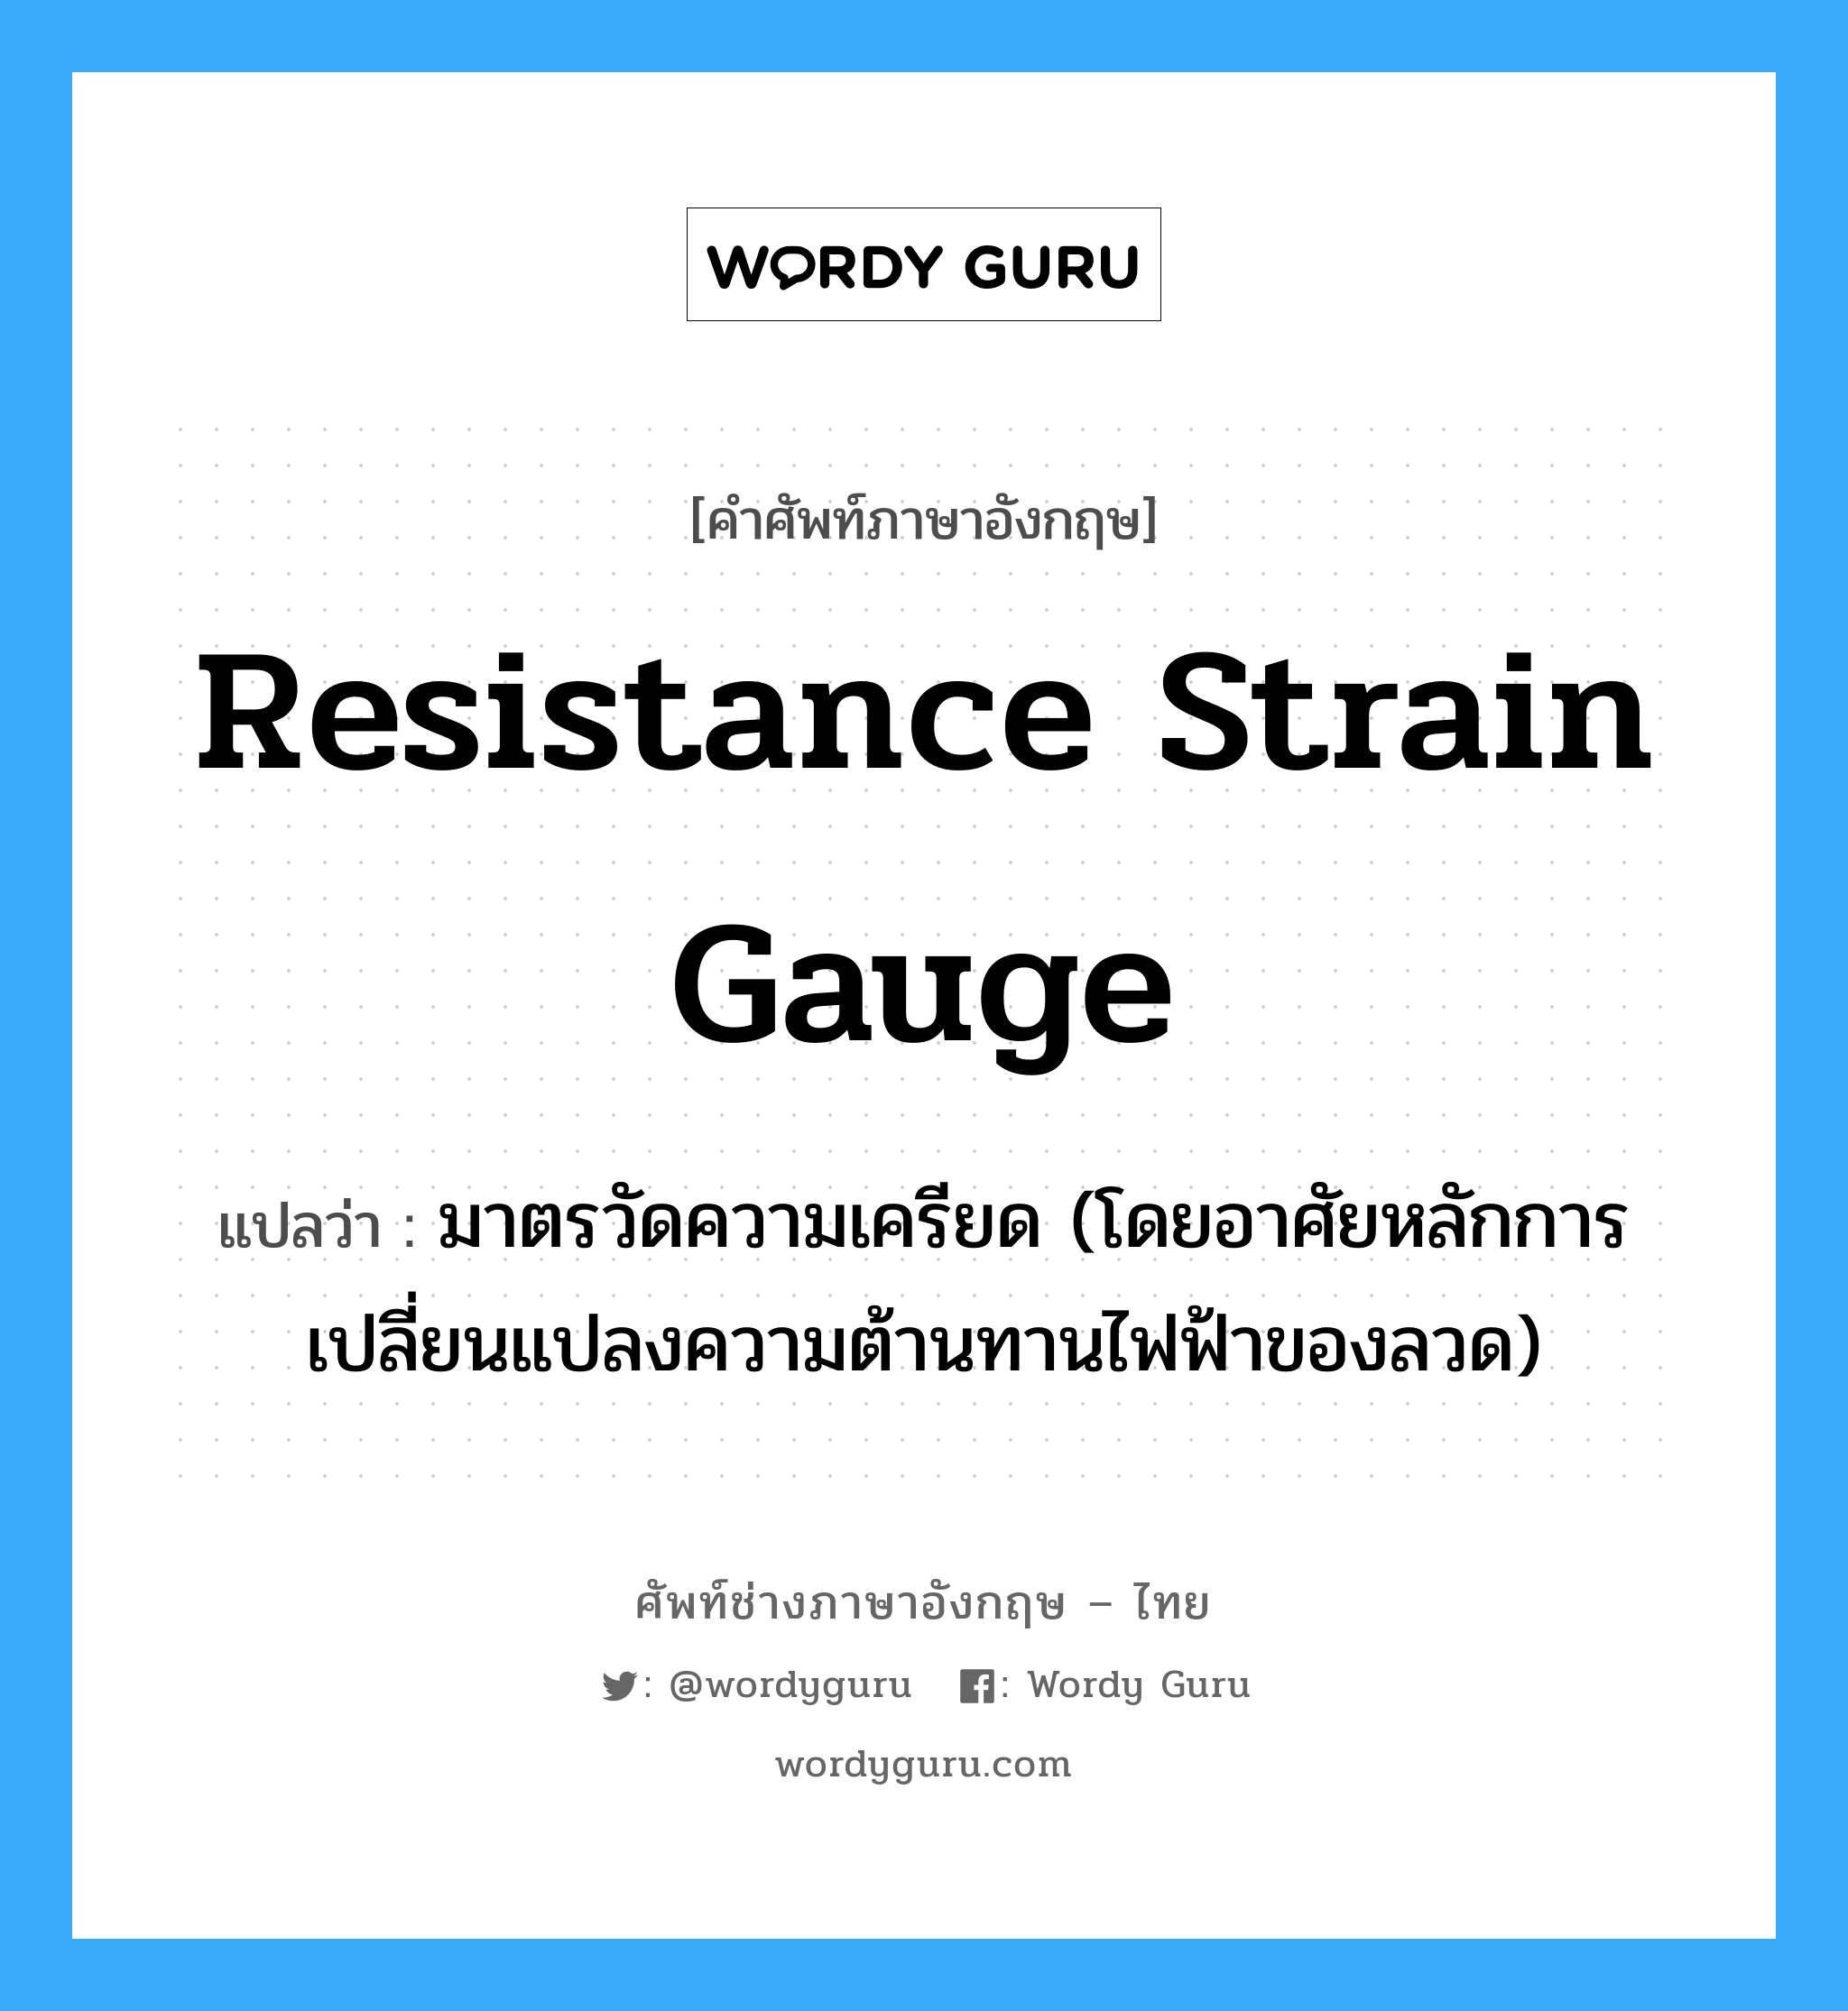 resistance strain gauge แปลว่า?, คำศัพท์ช่างภาษาอังกฤษ - ไทย resistance strain gauge คำศัพท์ภาษาอังกฤษ resistance strain gauge แปลว่า มาตรวัดความเครียด (โดยอาศัยหลักการเปลี่ยนแปลงความต้านทานไฟฟ้าของลวด)